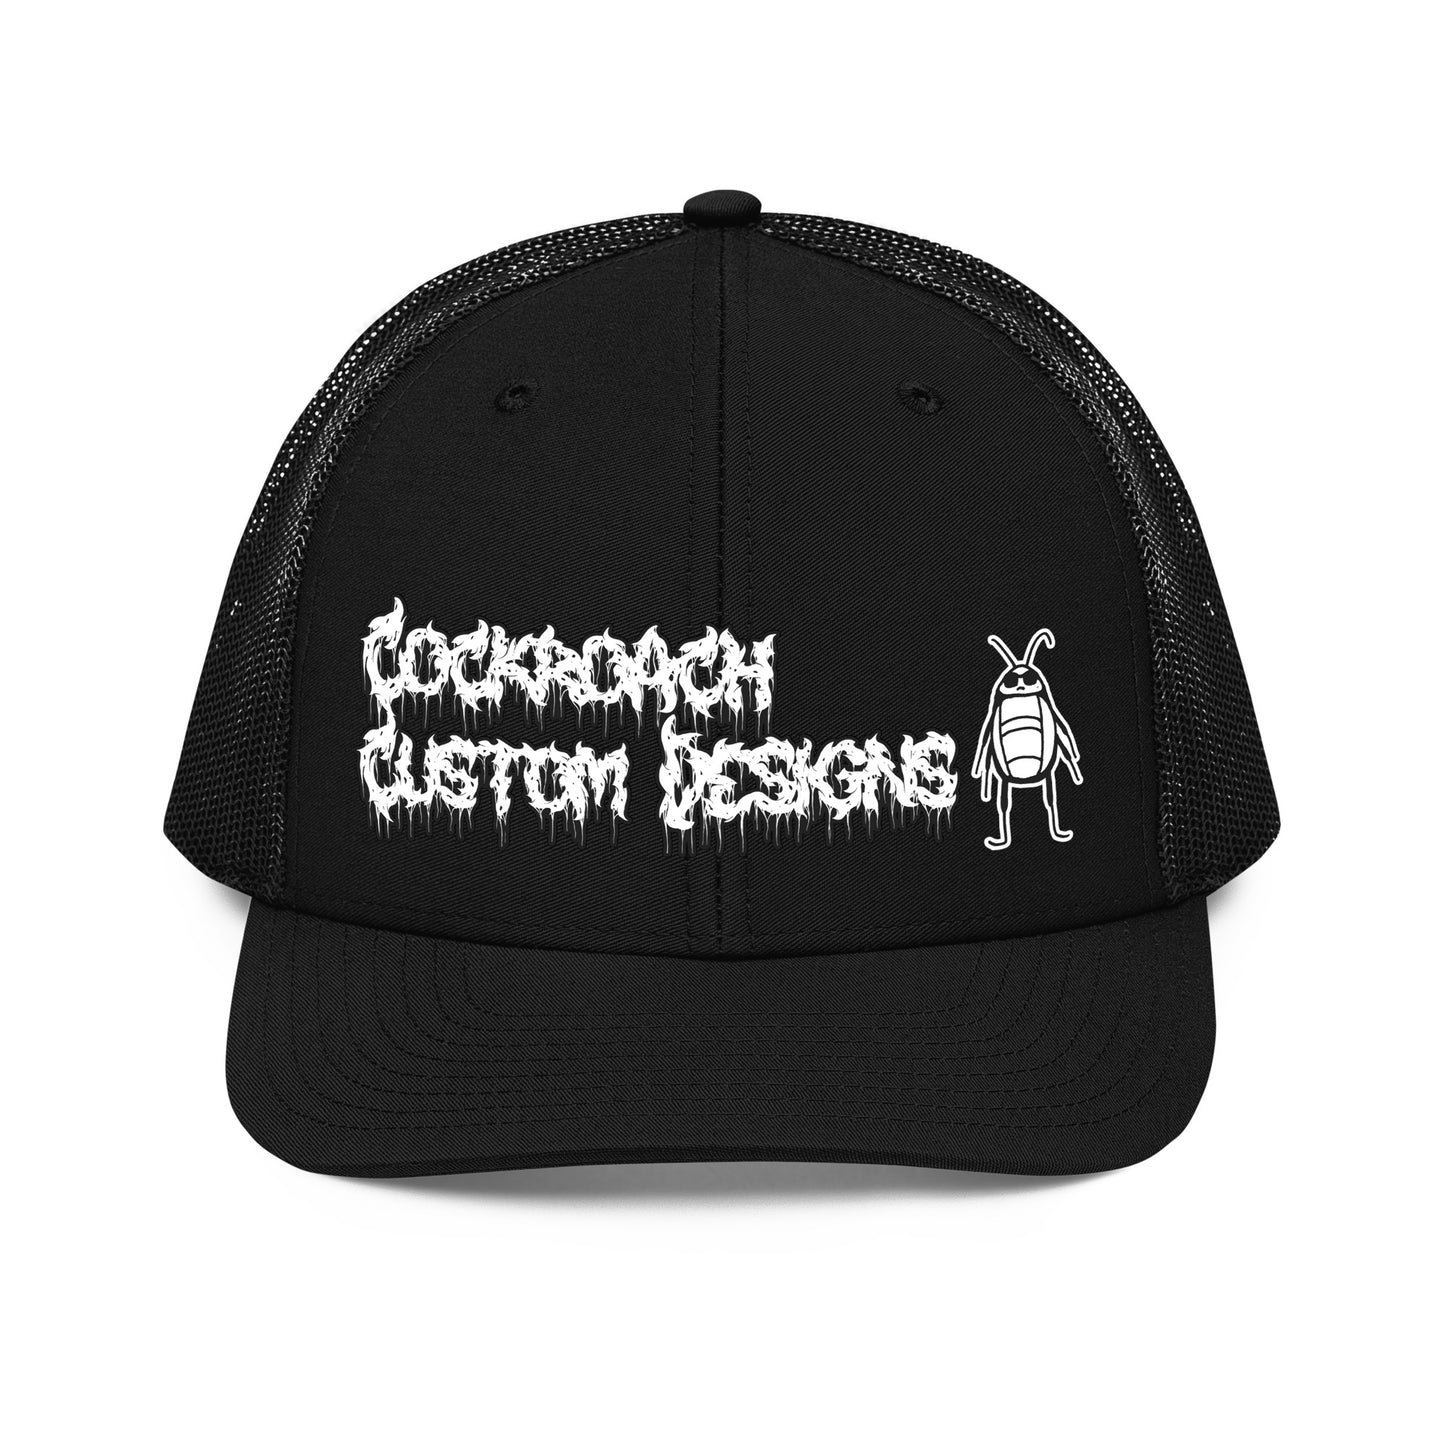 Cockroach Custom Designs Trucker Cap